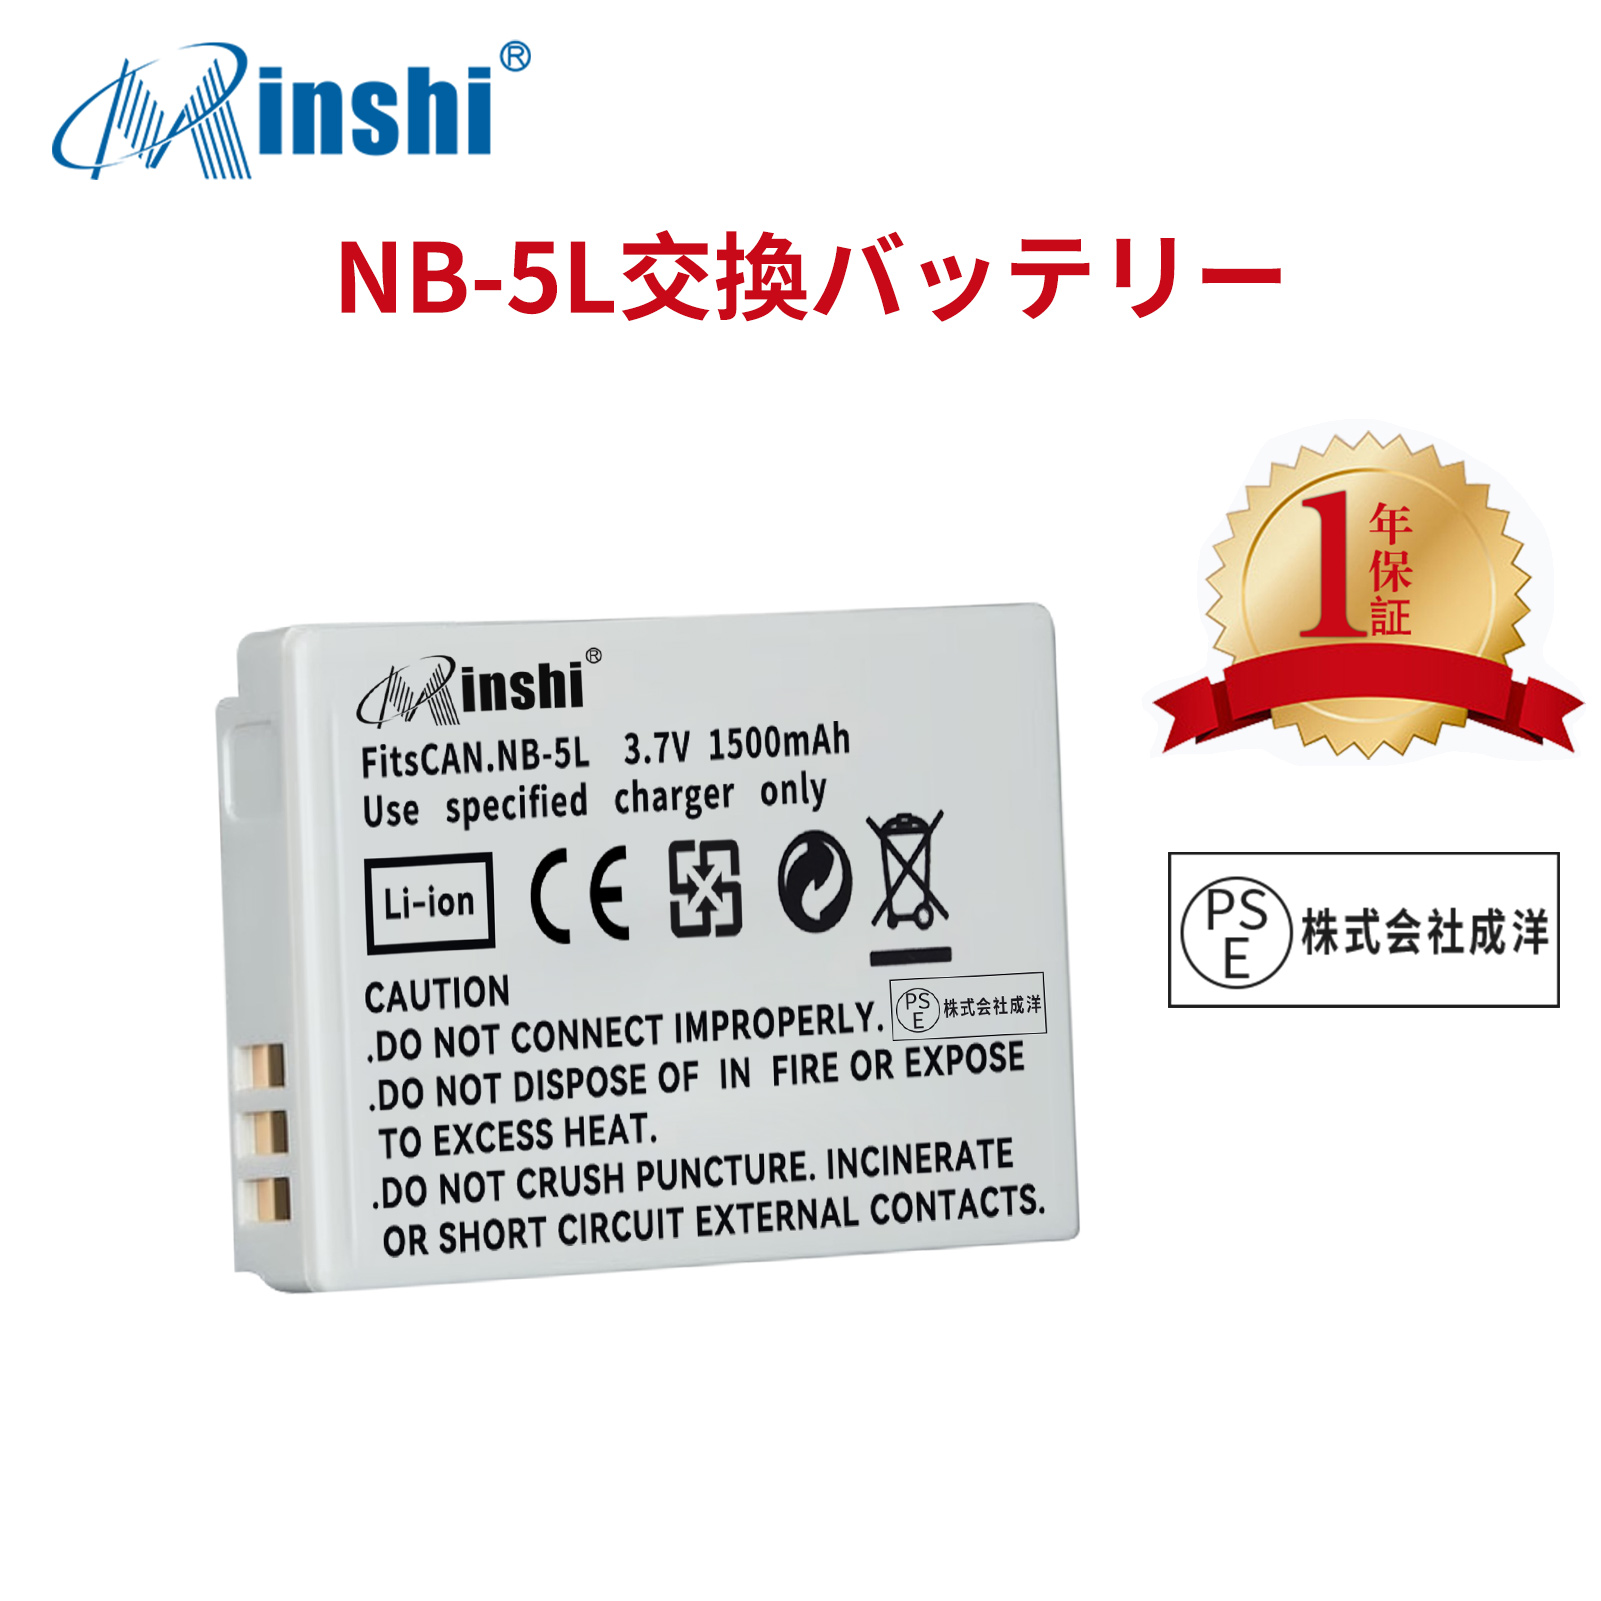 【1年保証】minshi CANON 900IS NB-5L  NB-5L【1500mAh 3.7V】PSE認定済 高品質交換用バッテリー